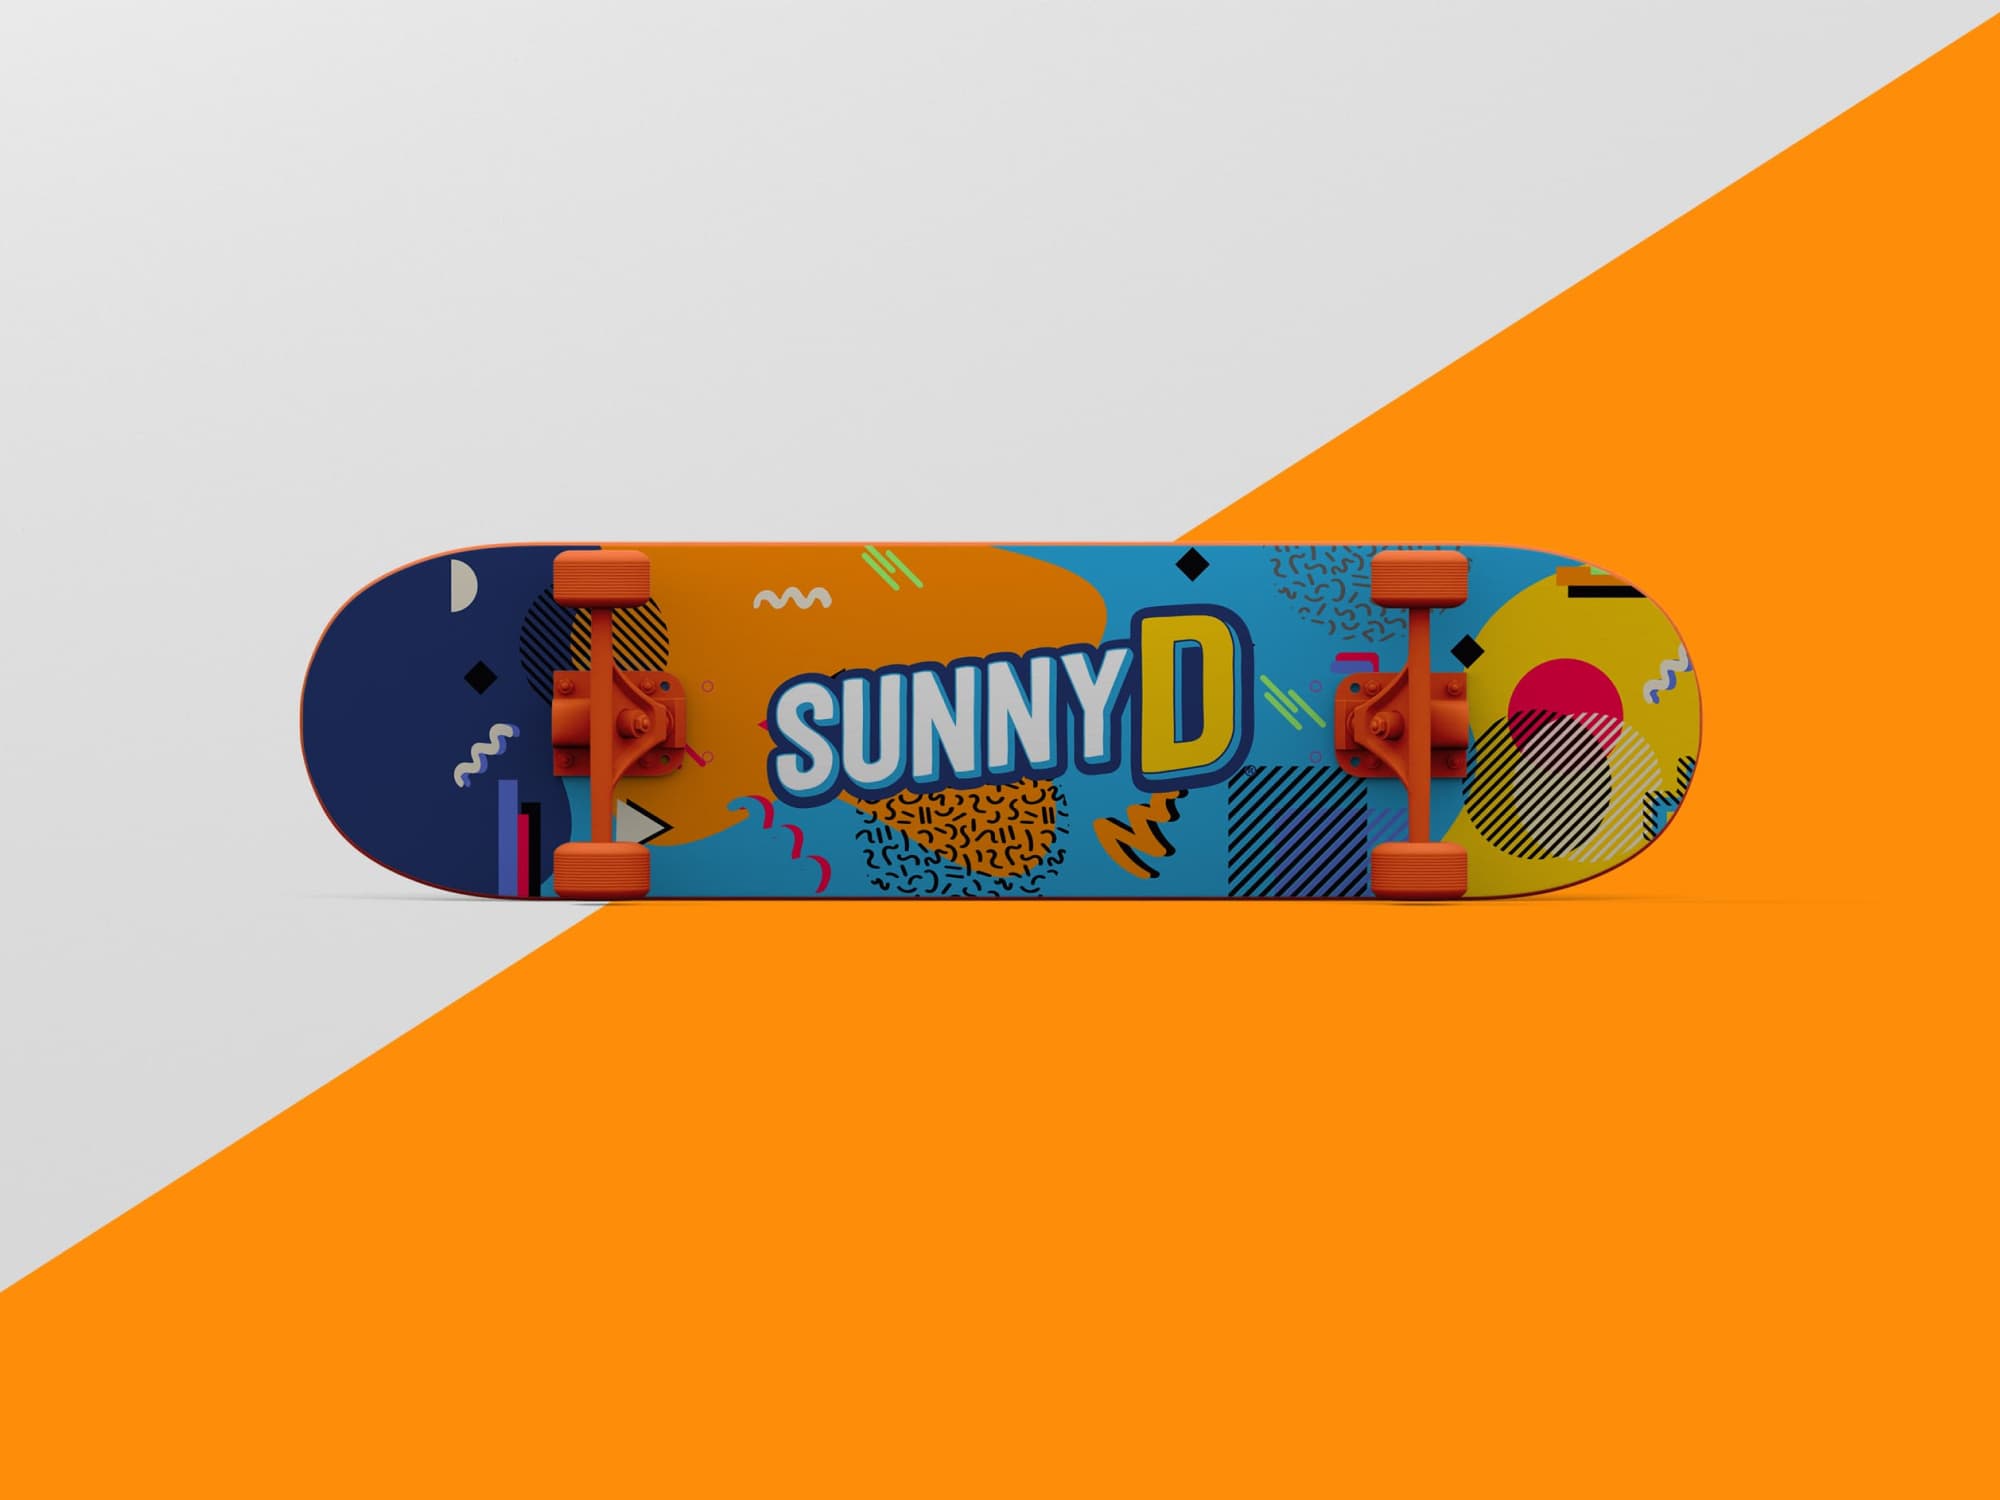 sunnyd-board-02